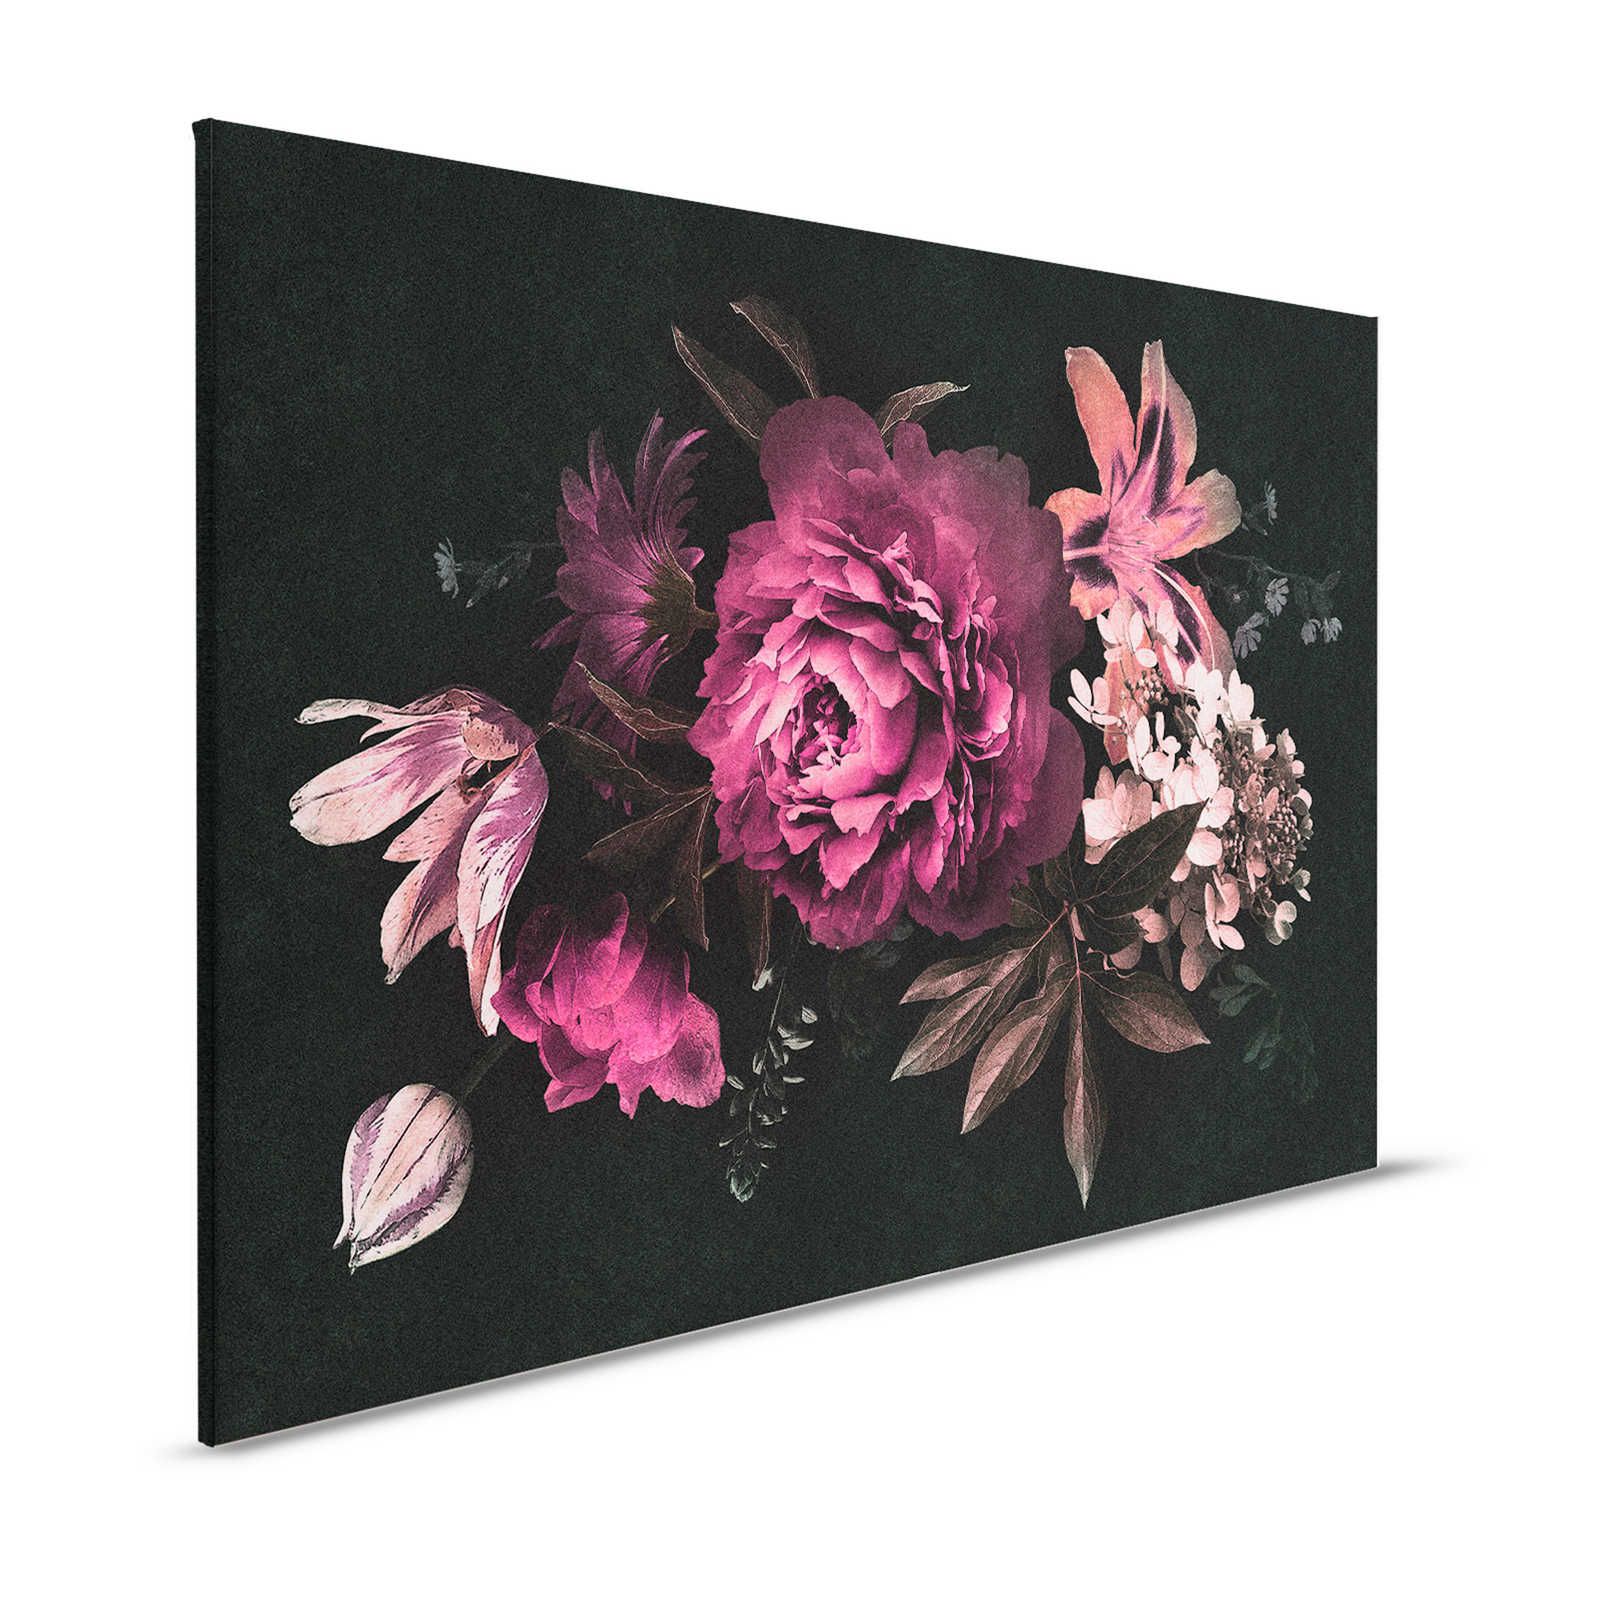 Drama queen 3 - Quadro su tela con bouquet romantico - 1,20 m x 0,80 m
